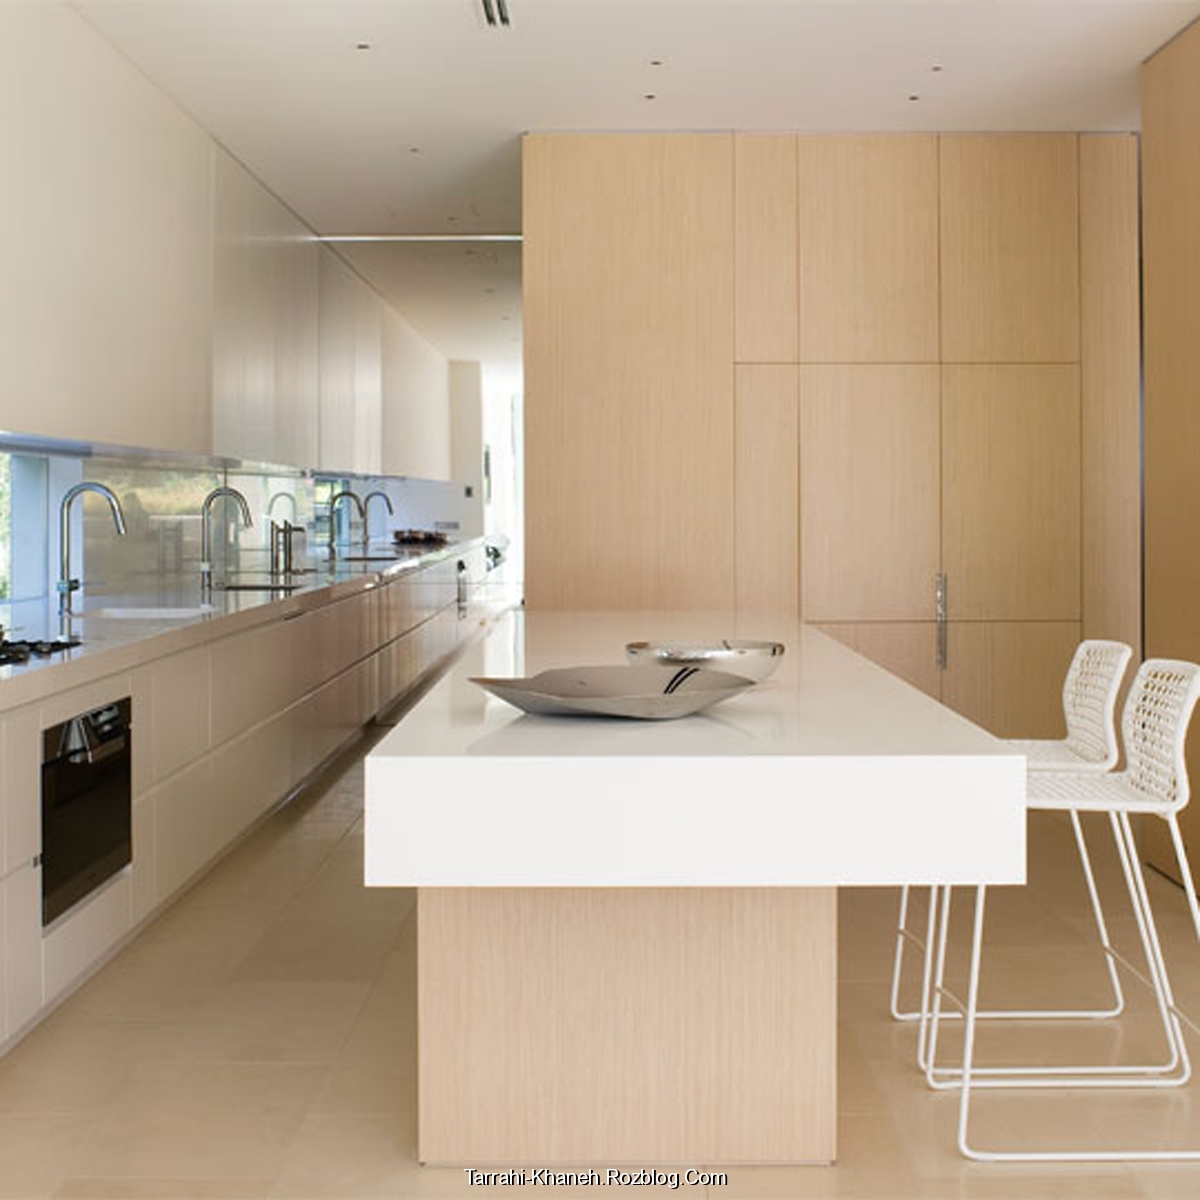 https://rozup.ir/up/tarrahi-khaneh/Pictures/Kitchen-Designs/minimalist-kitchen/minimalist-white-kitchen-designs.jpg